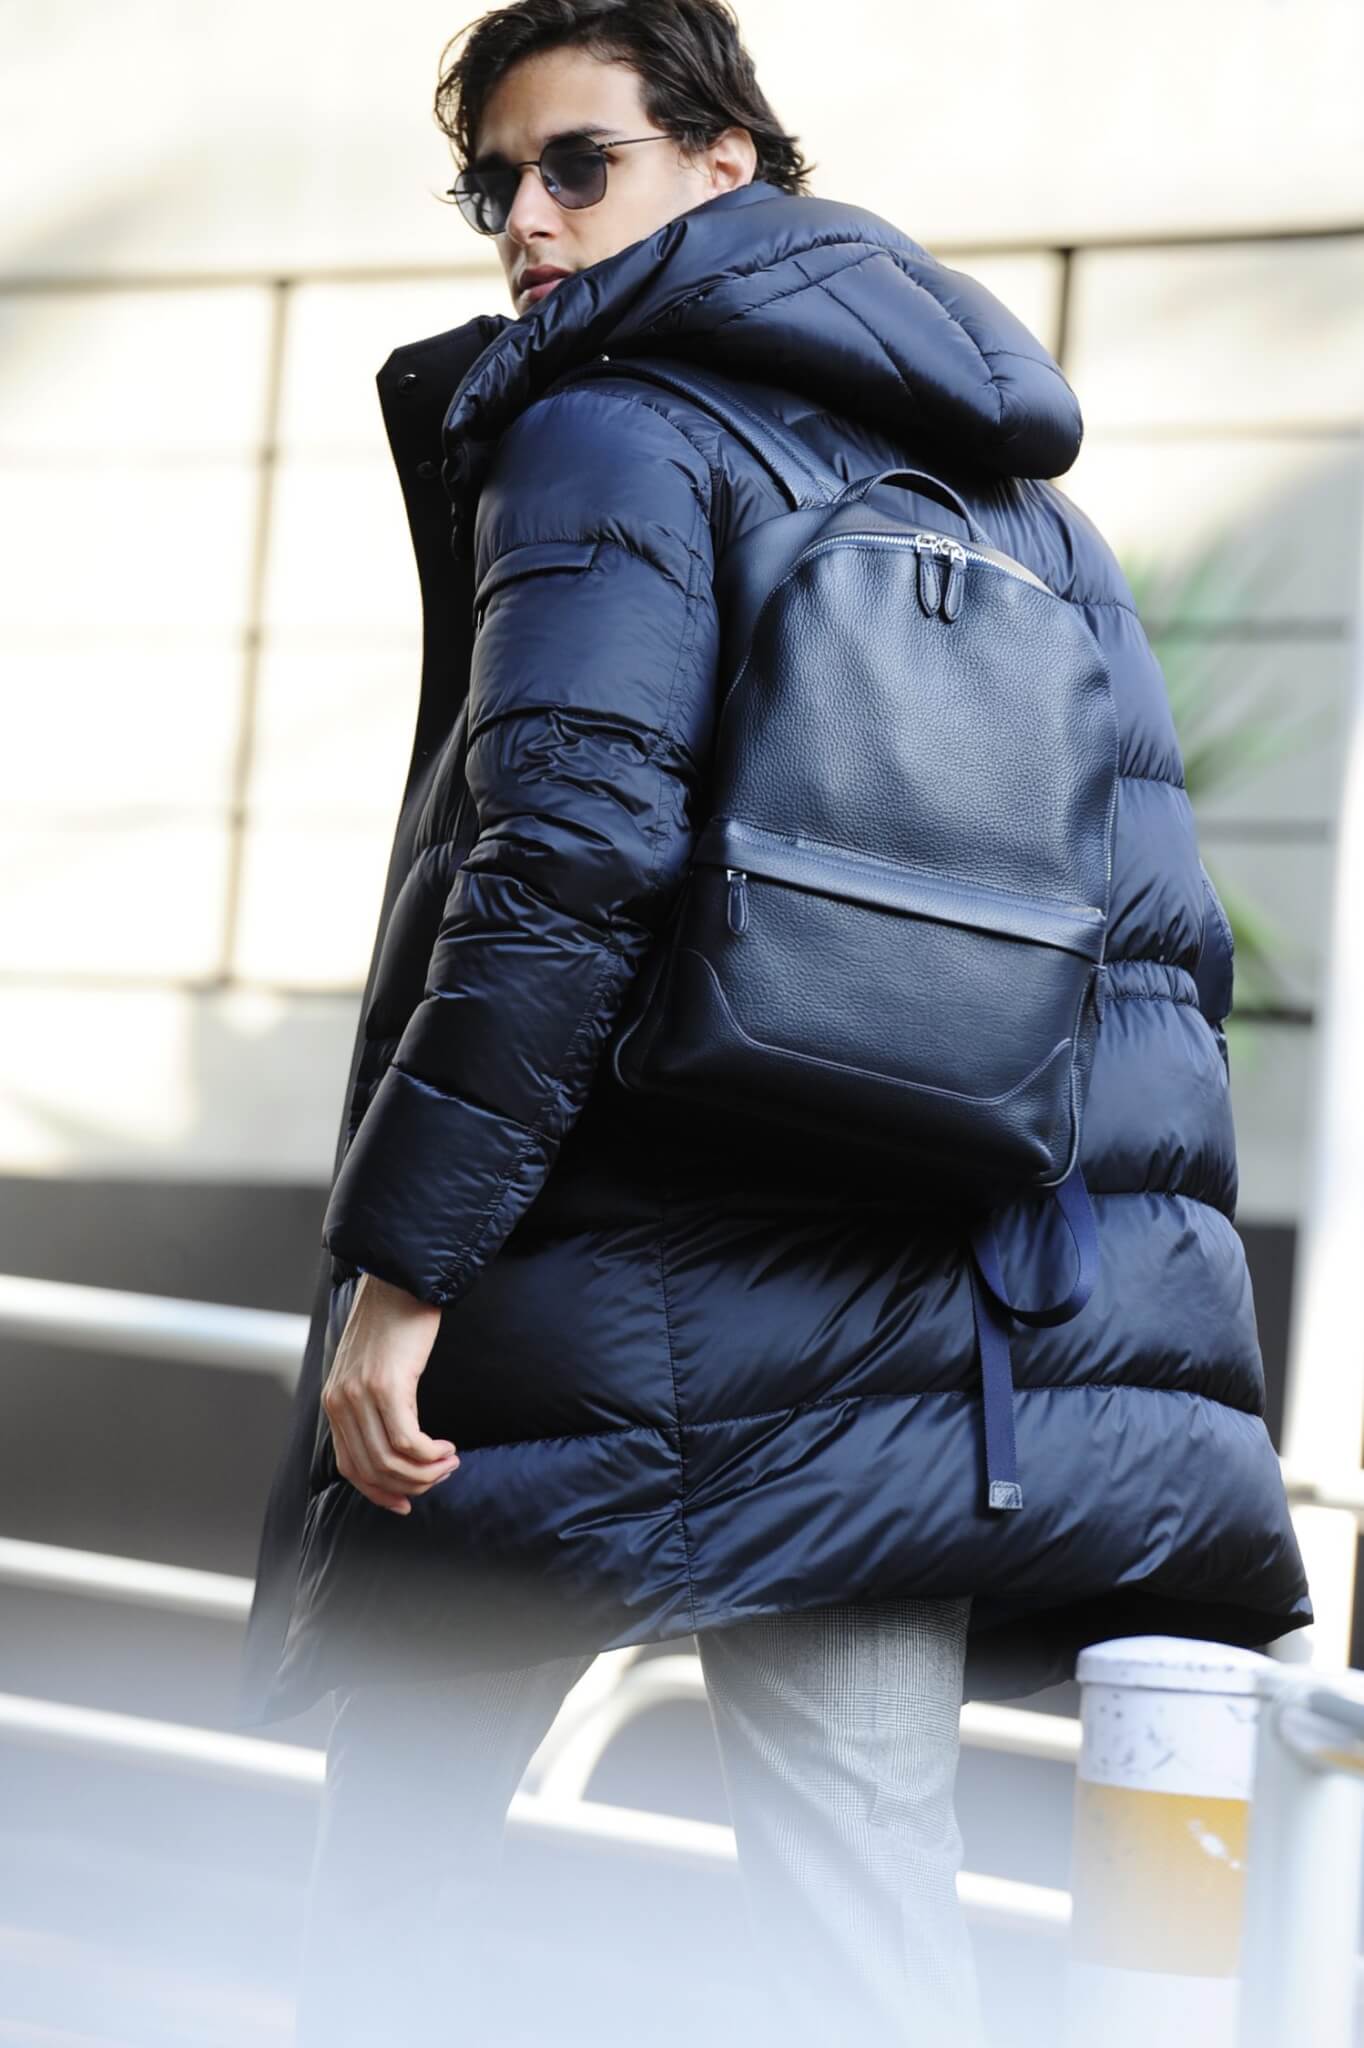 半歩リードするレザーバッグ選びの見極めポイントとは メンズファッションメディア Otokomaeotokomae 男前研究所